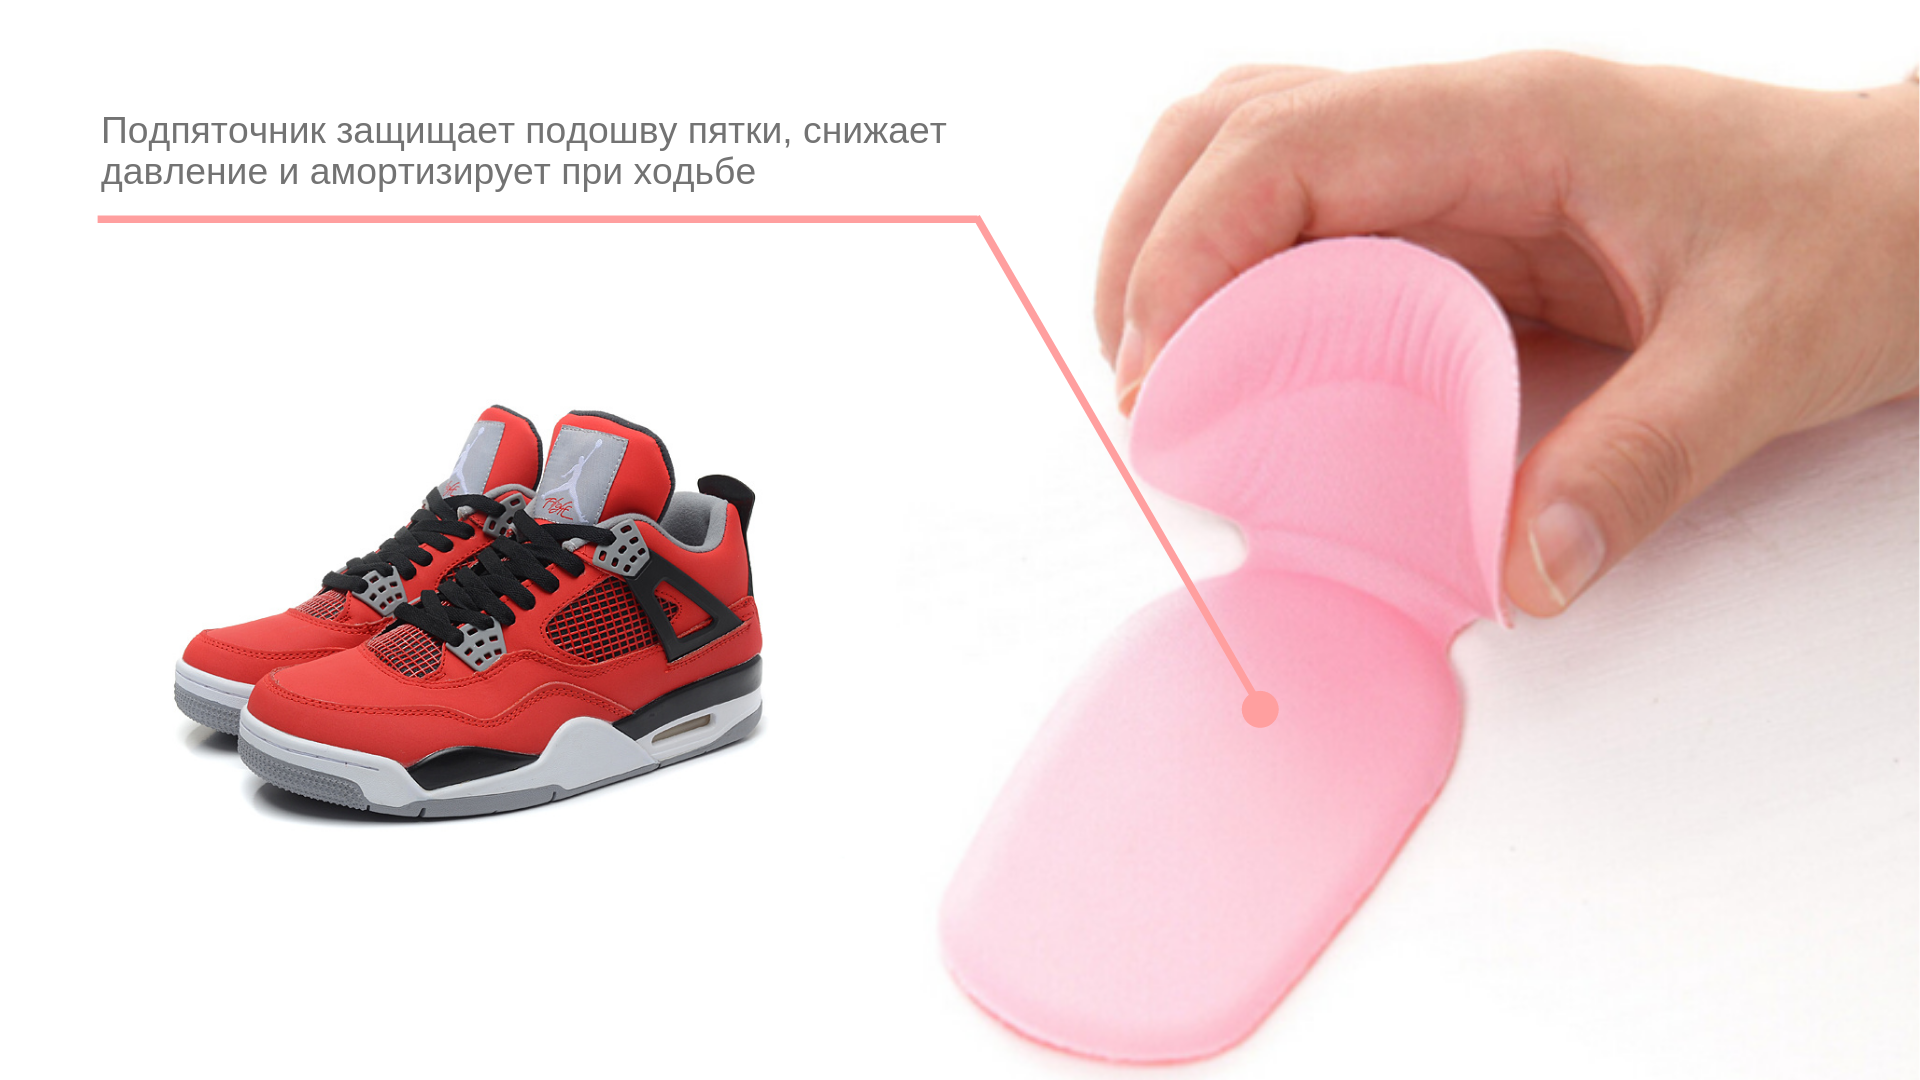 Способы размягчения жёсткой обуви в домашних условиях что сделать, чтобы обувь не натирала?